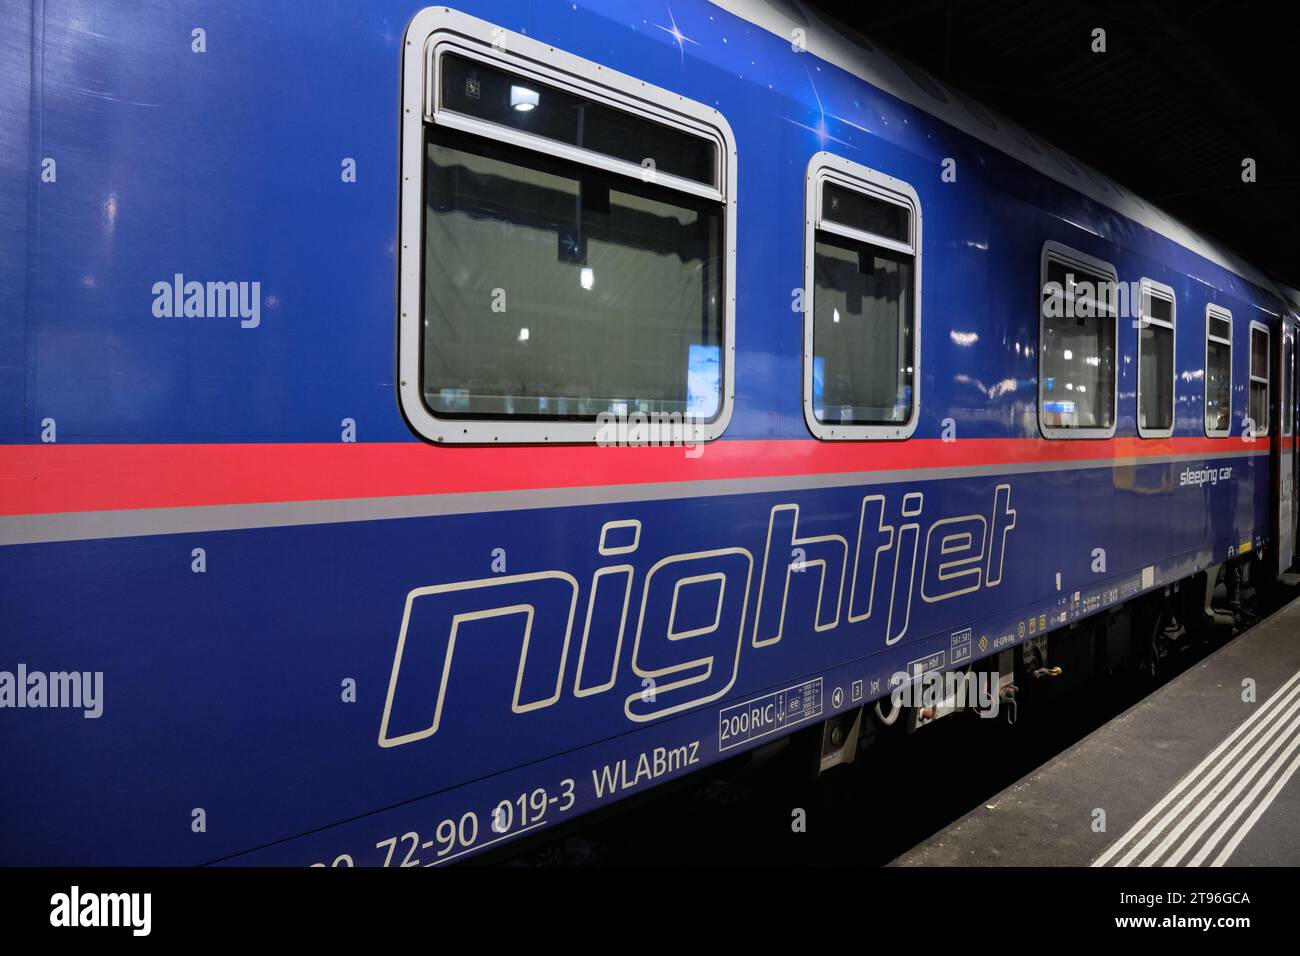 Un train couchette à jet de nuit sur le quai de la gare. Zurich, Suisse. Banque D'Images